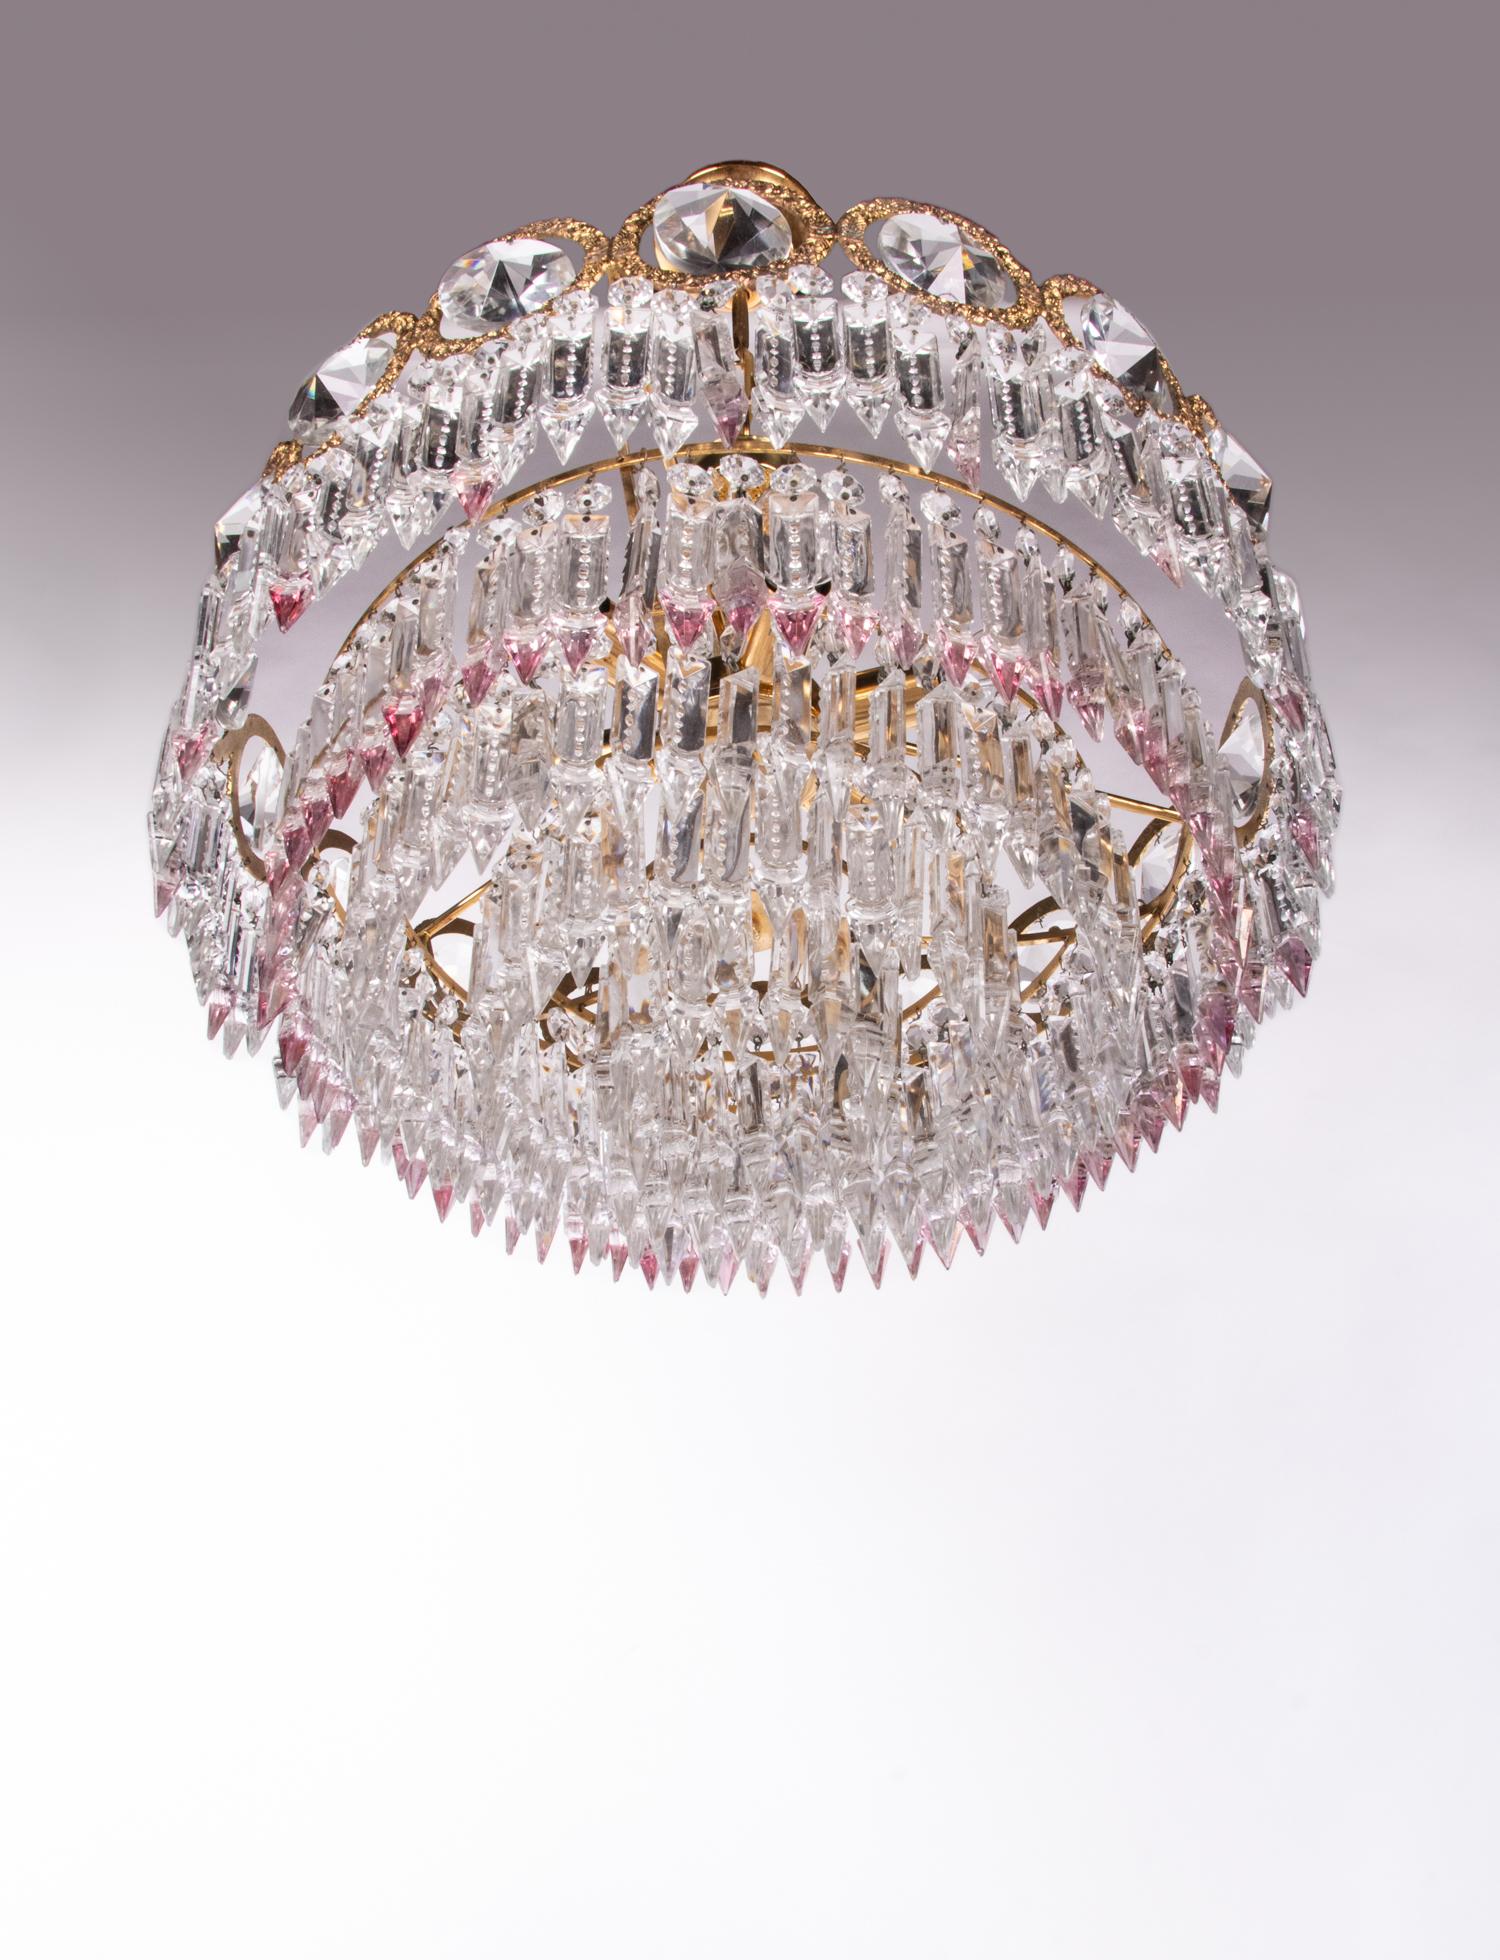 Glamorous Jewel Swarovski Crystal & Brass Chandelier, Germany, 1960s For Sale 1